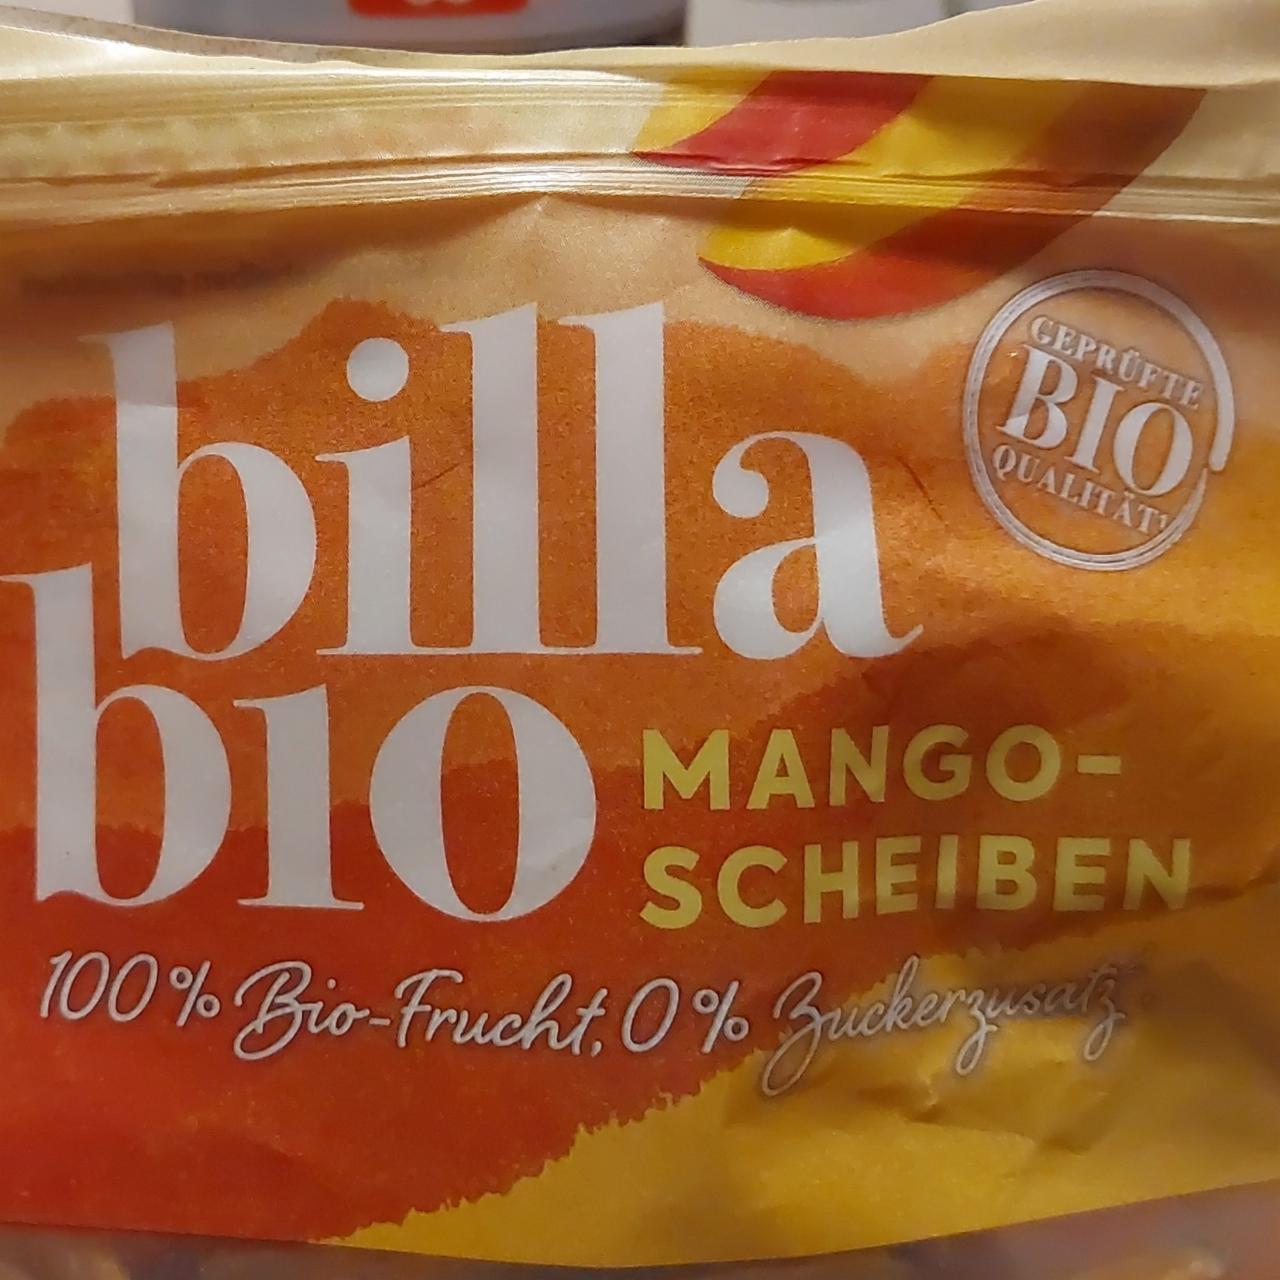 Képek - Billa bio mango scheiben